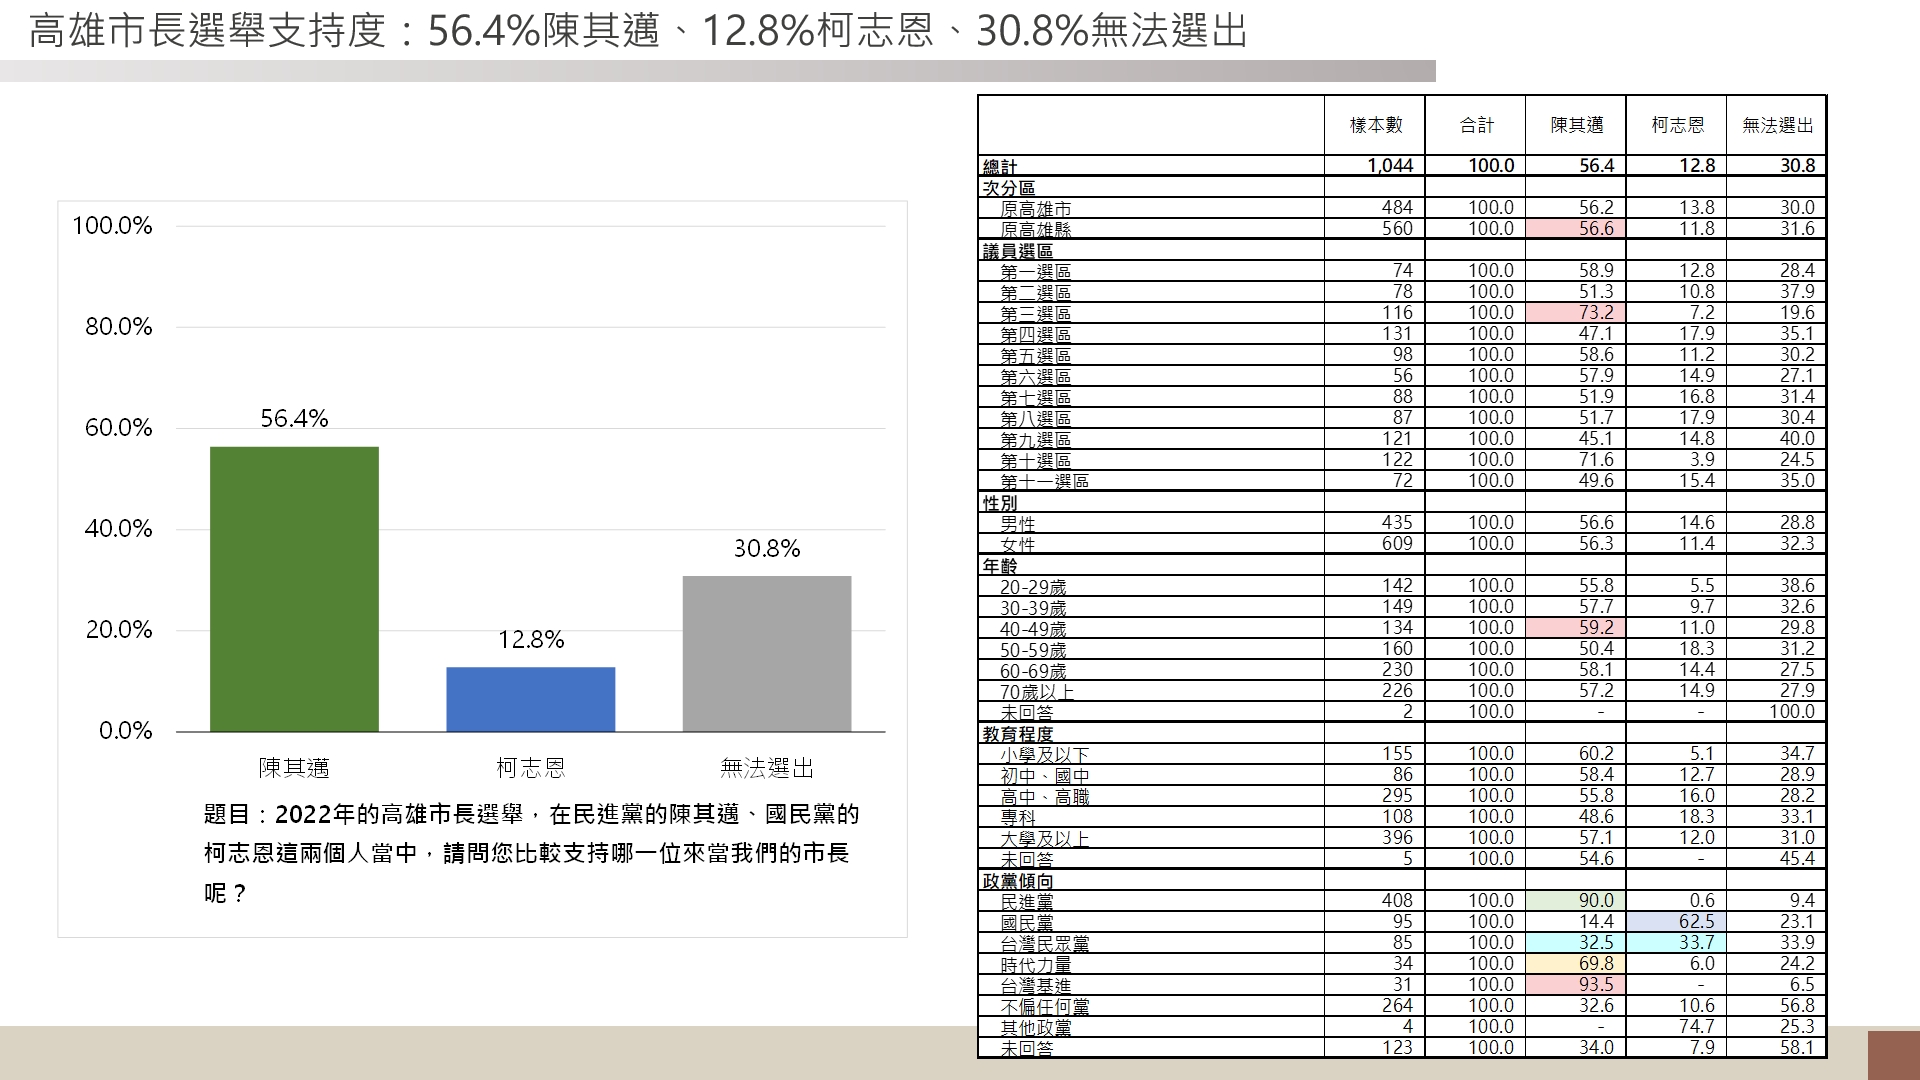 【高雄市長選情最新民調】陳其邁 56.4% 懸殊差距狠甩柯志恩的12.8%